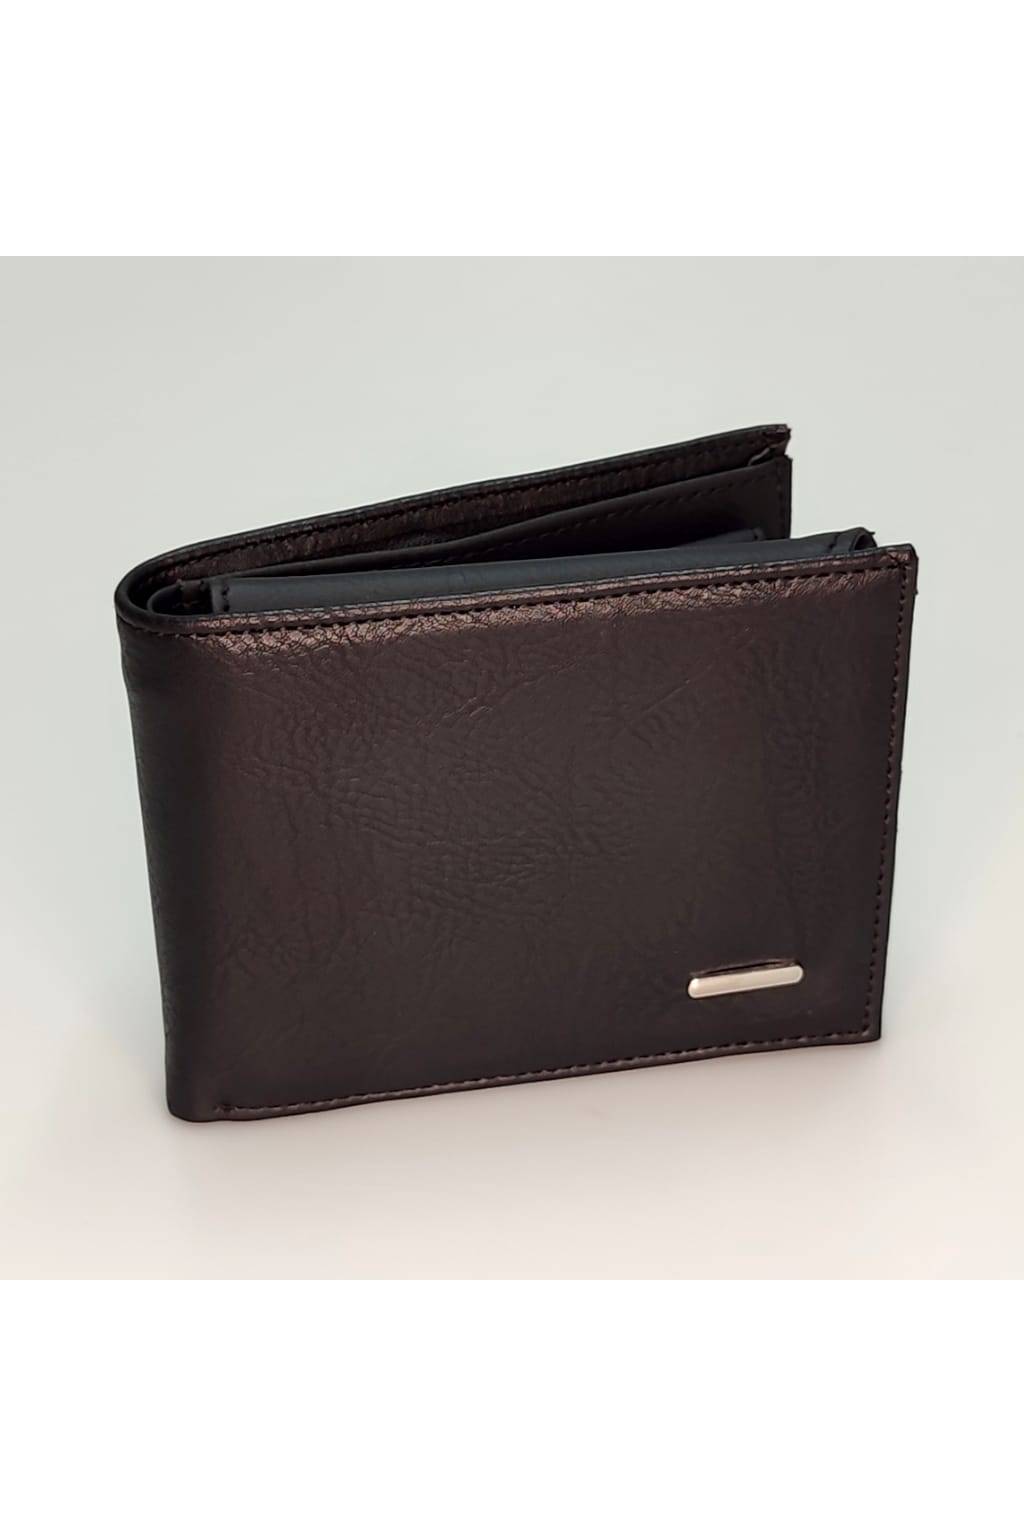 Pánska peňaženka ZY 21570 čierna www.kabelky vypredaj (4)